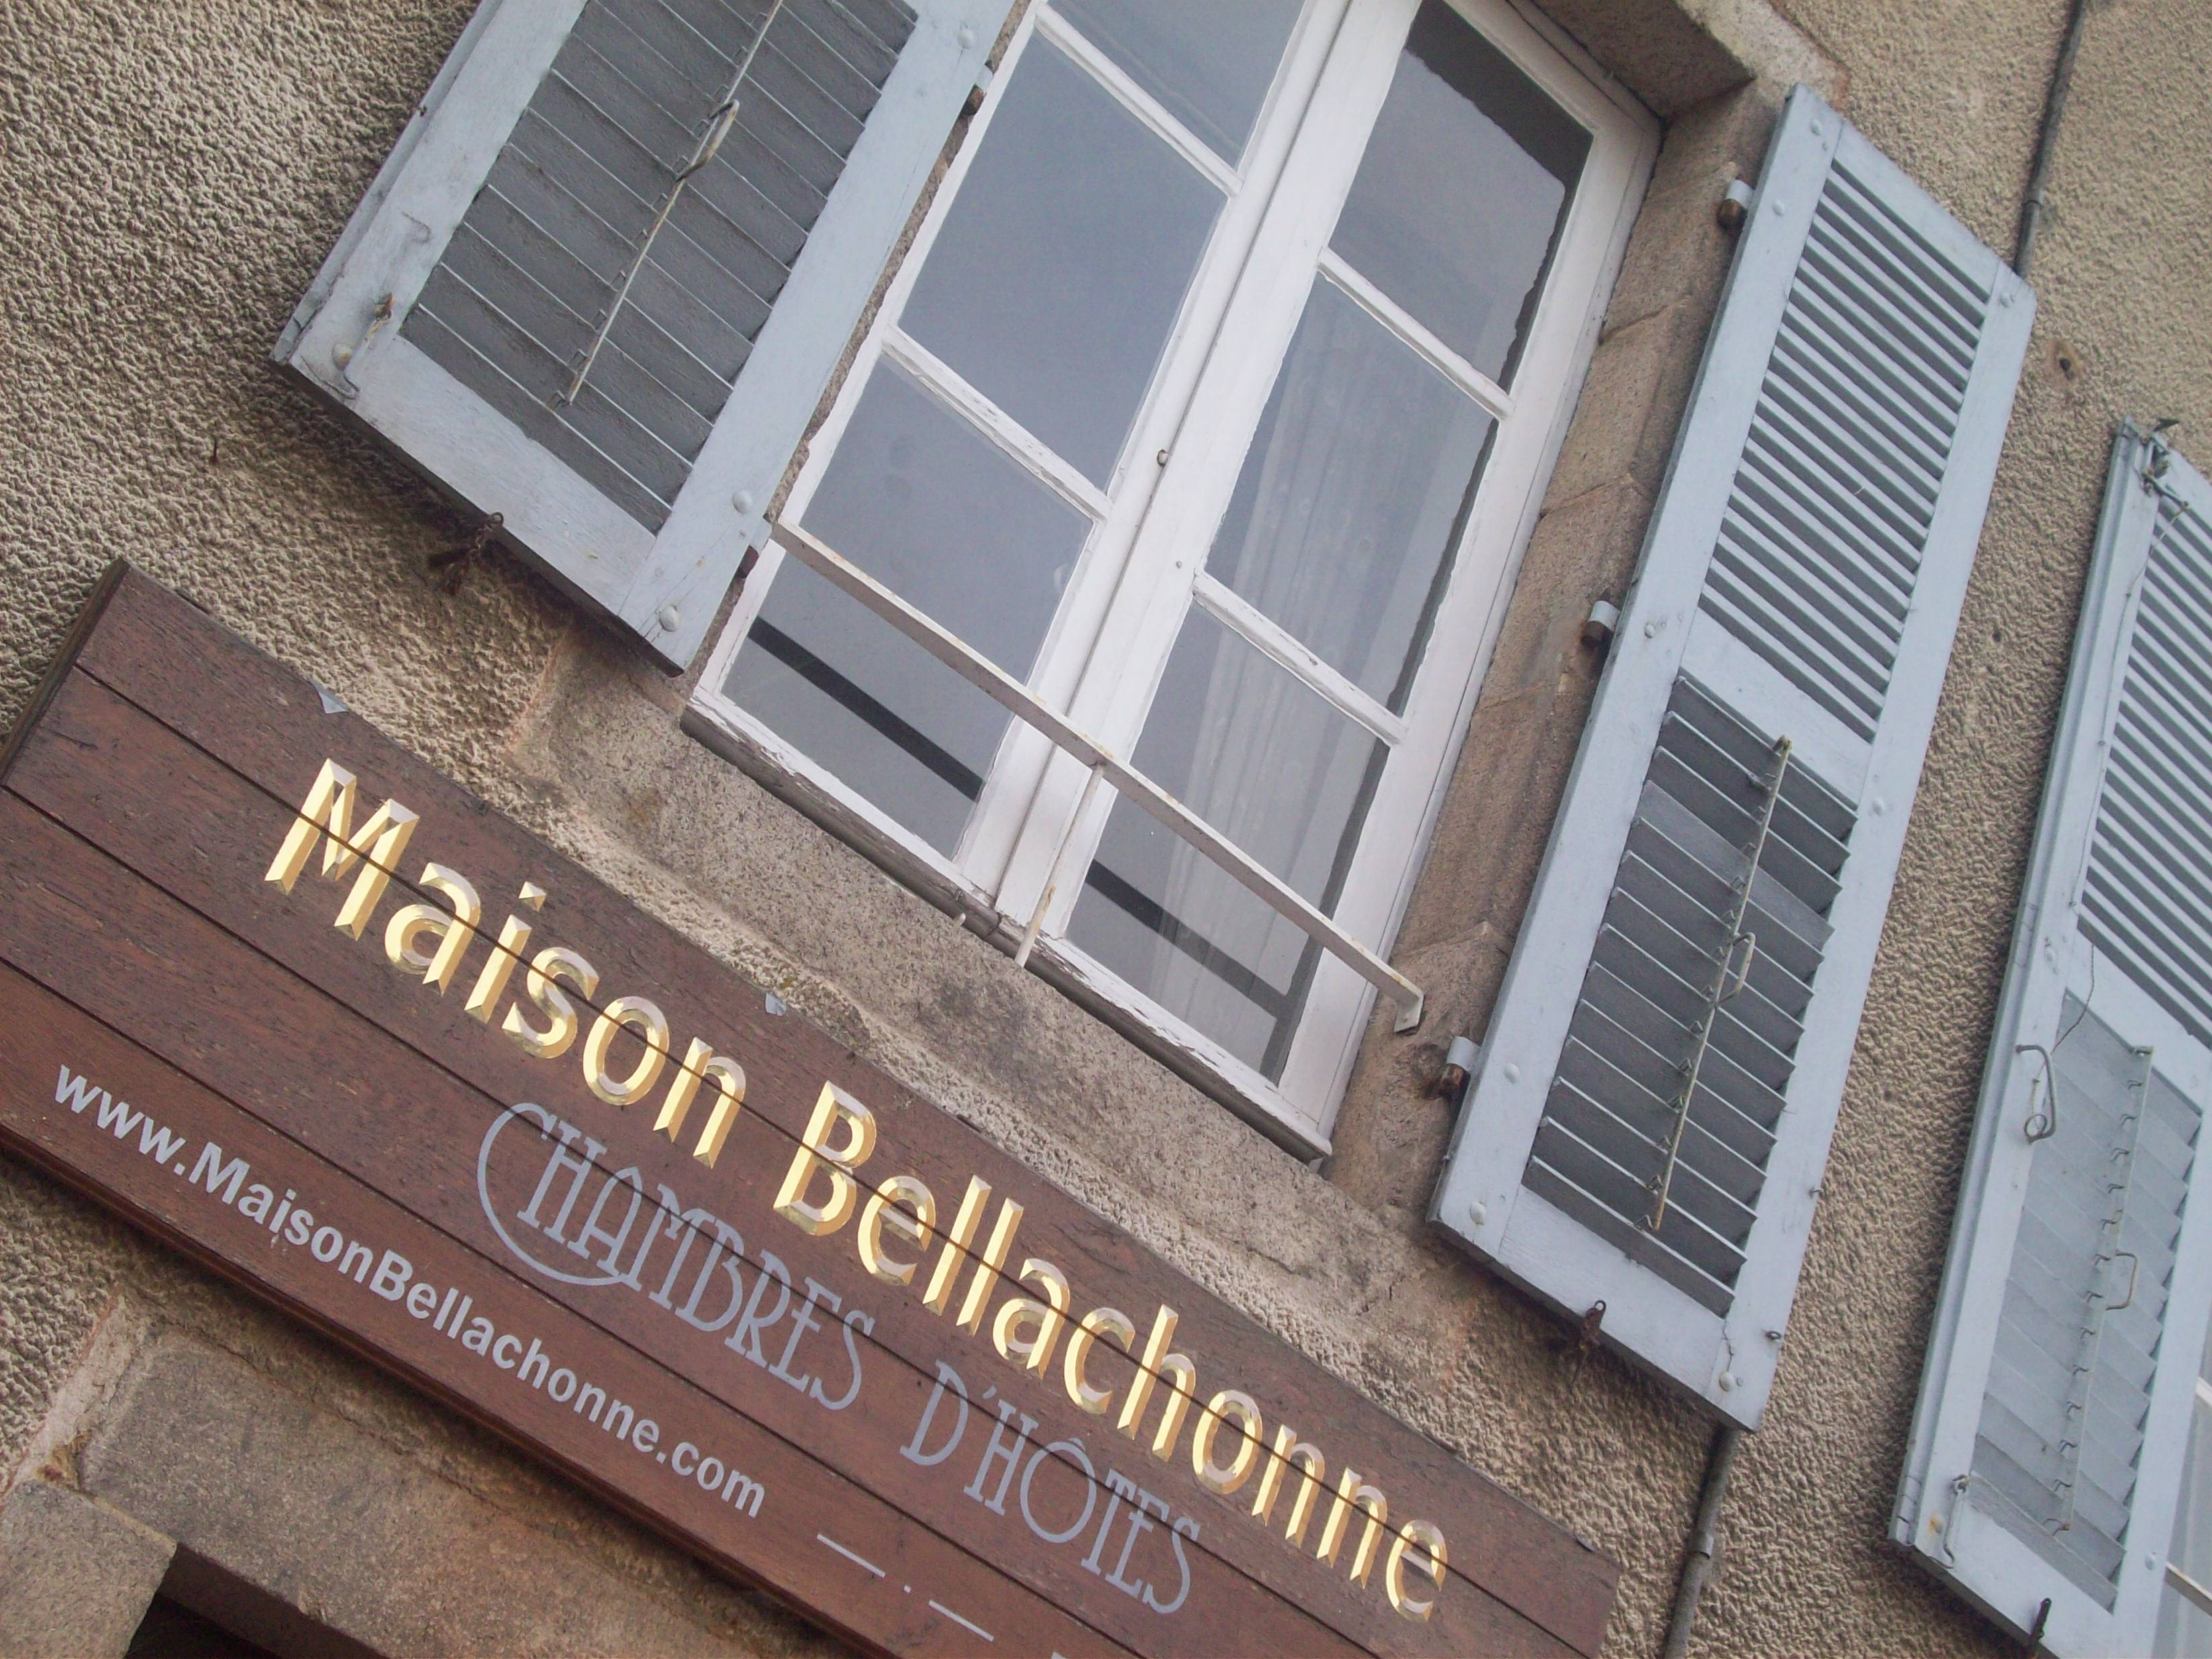 Maison Bellachonne, Bellac, France | Cafe Dharma dedans Chambre D Hote Bellac